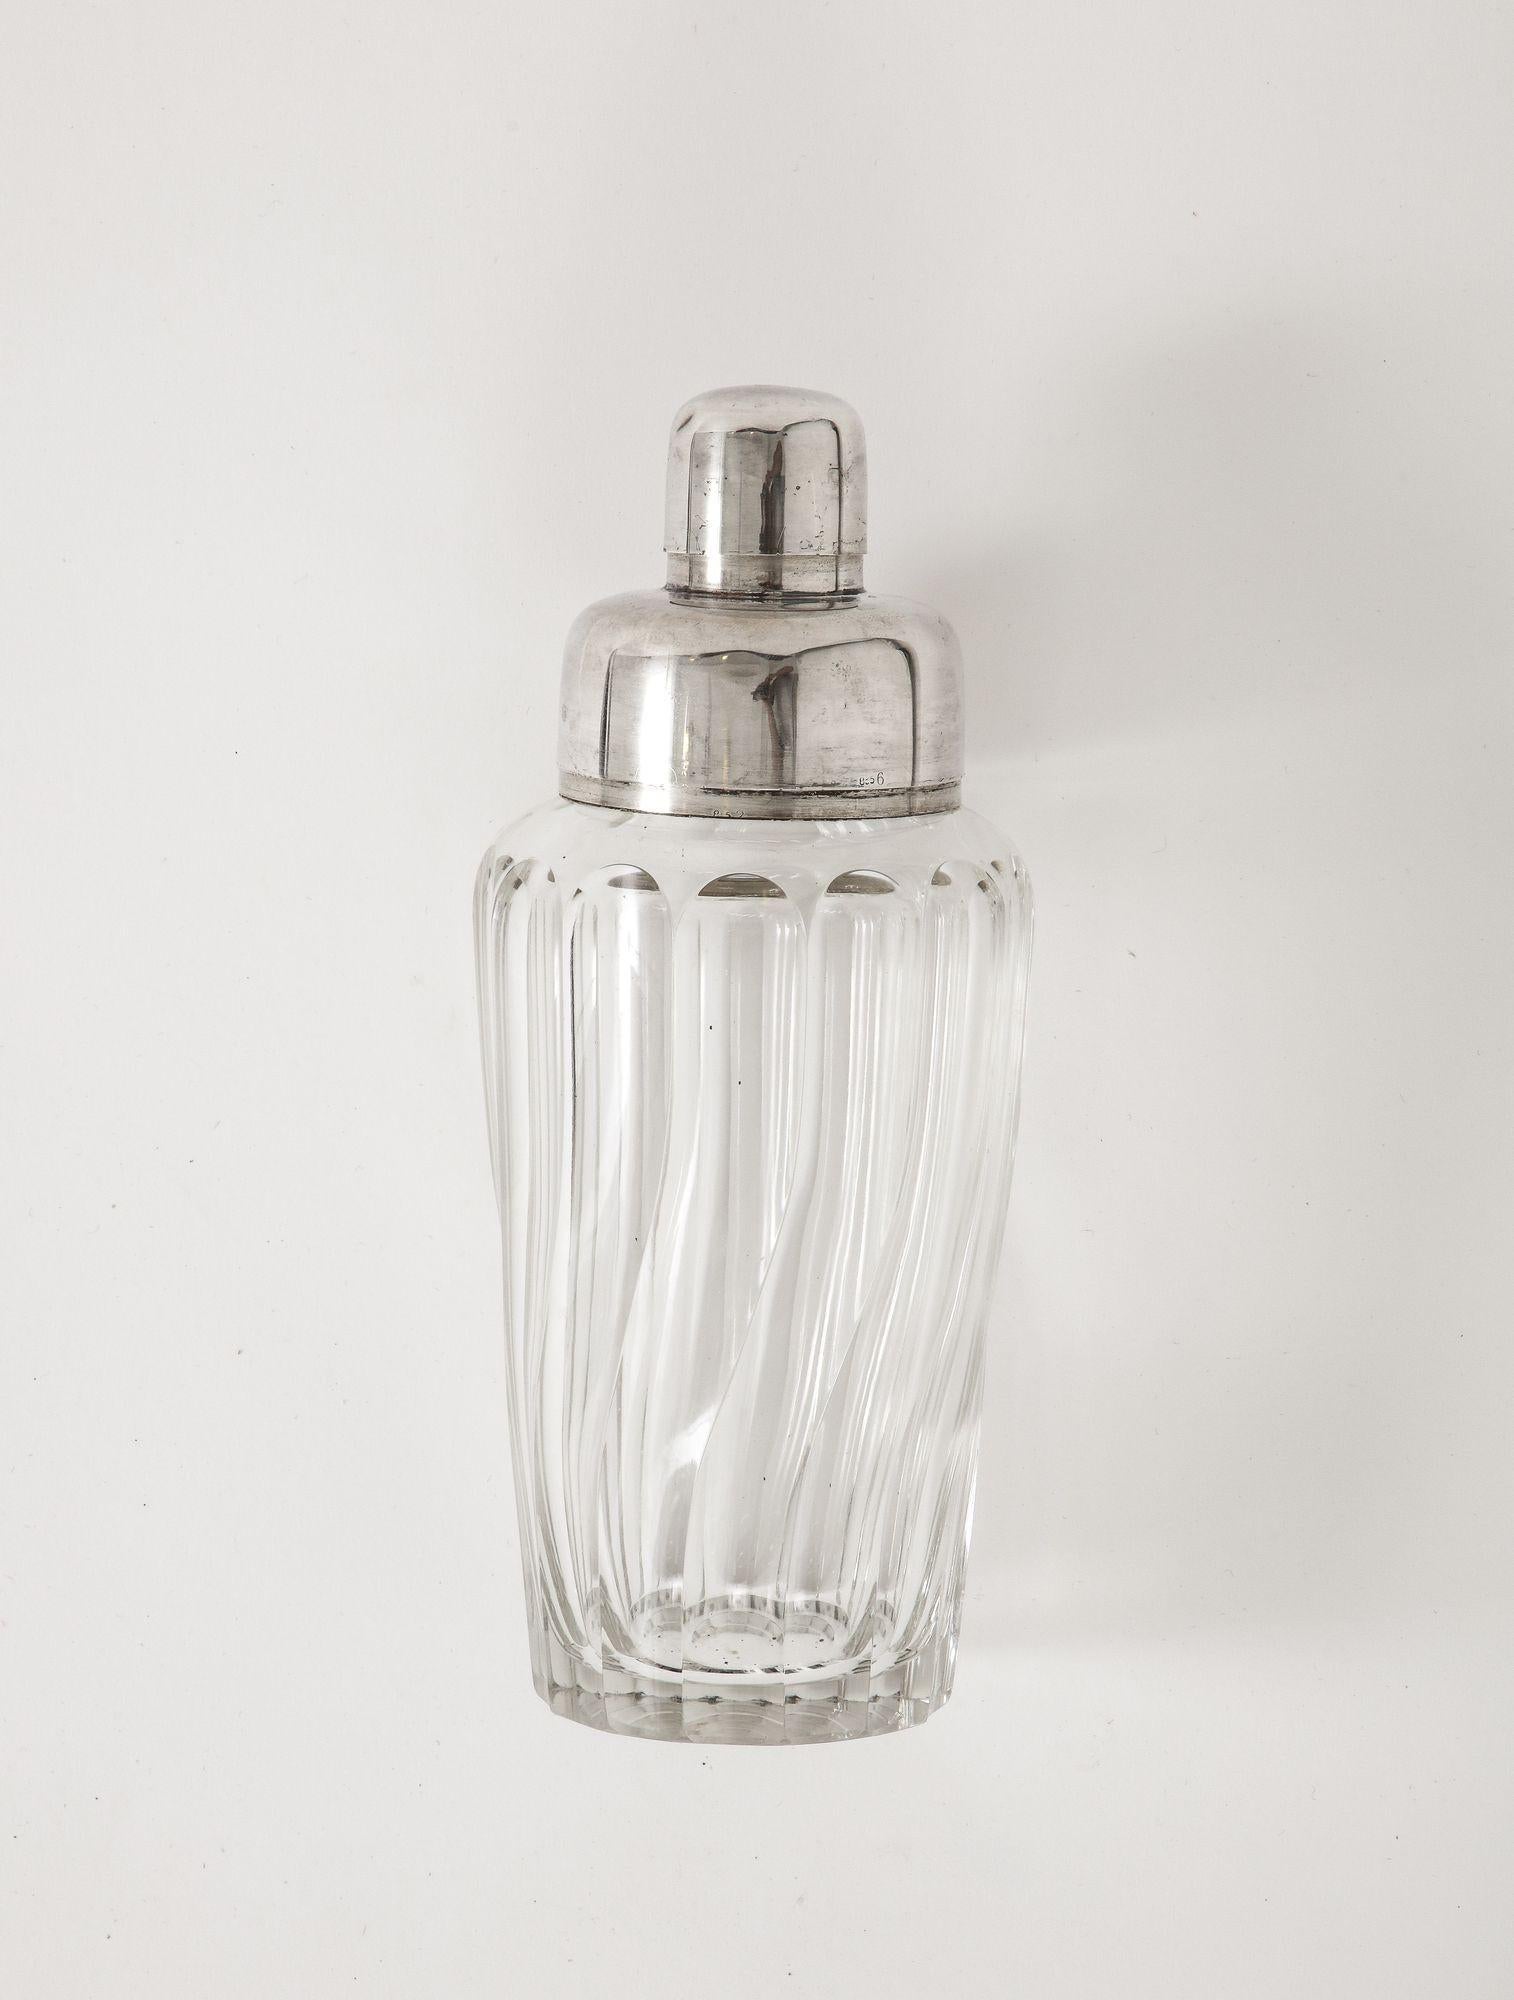 Art Deco Cocktail Shaker aus französischem Kristall und Silberblech in Form eines Twists

